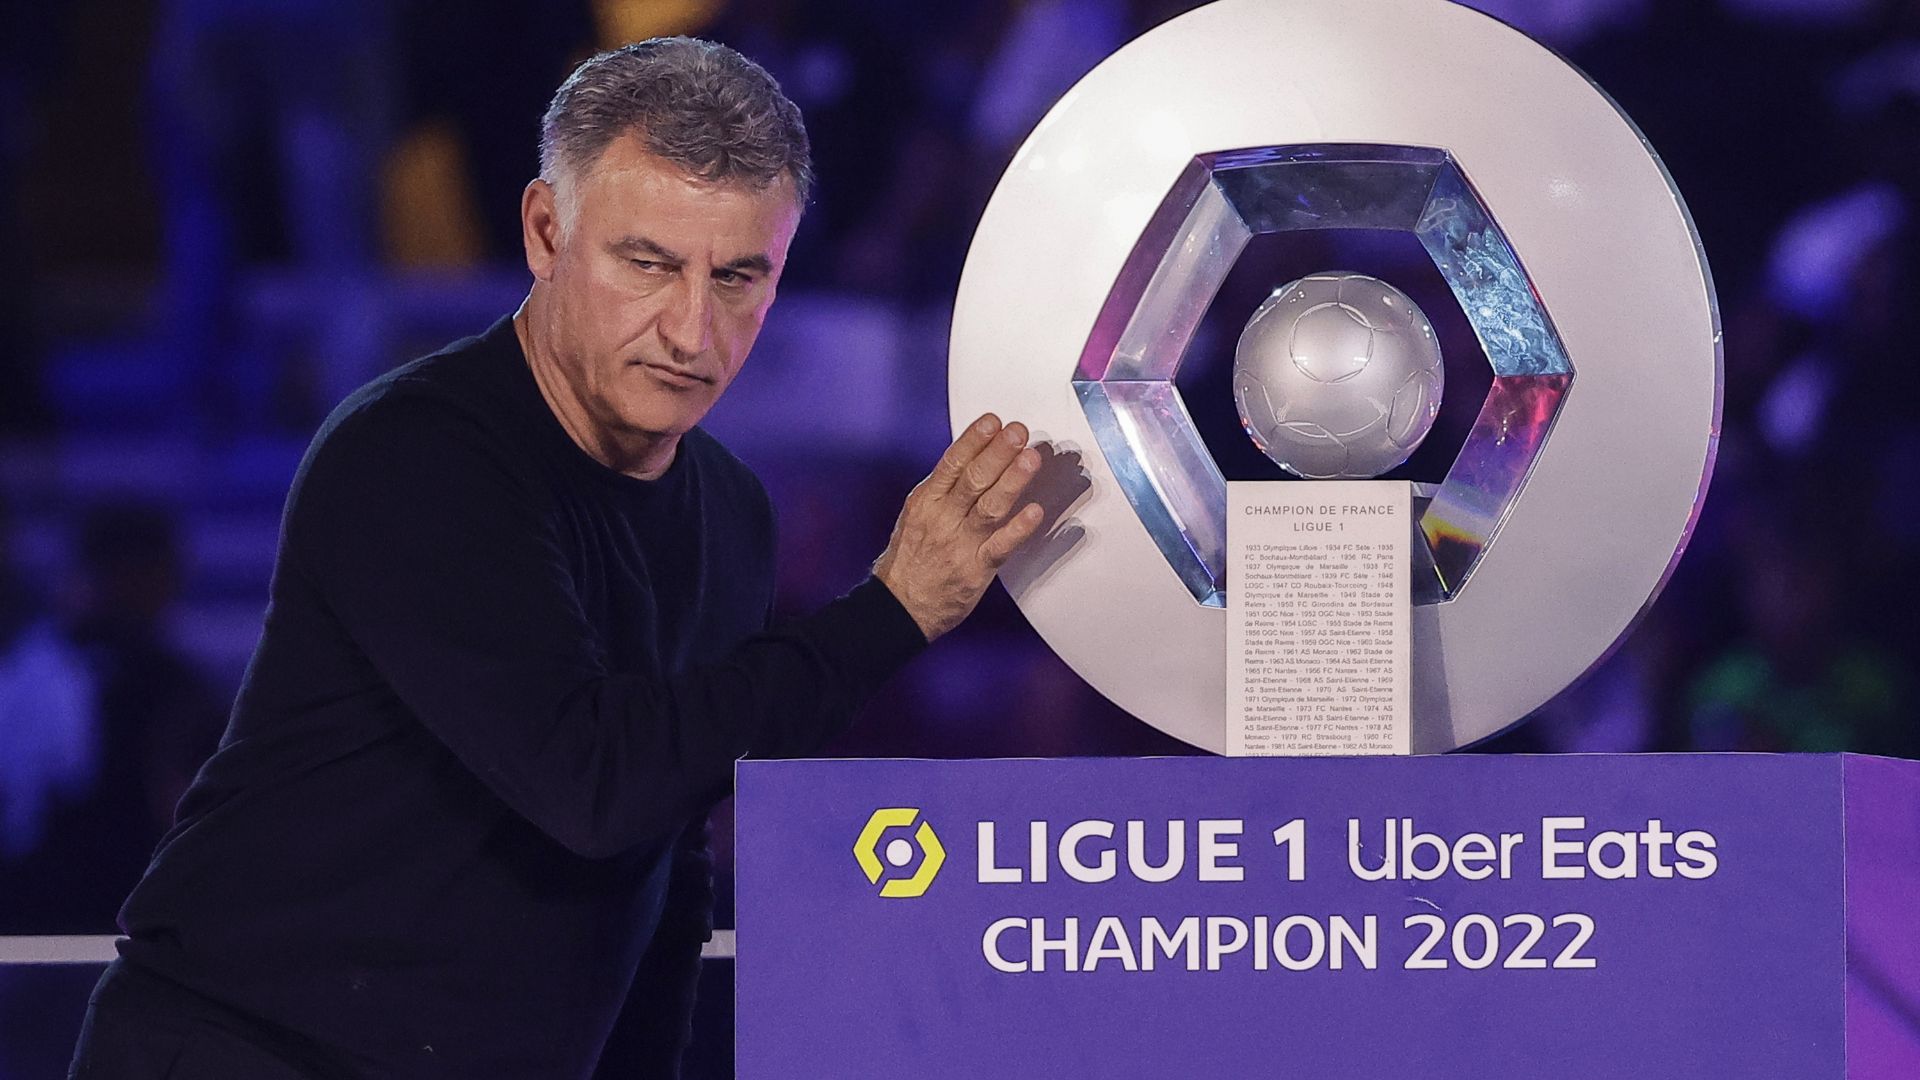 Ligue 1 : le calendrier complet de la saison 2022-2023